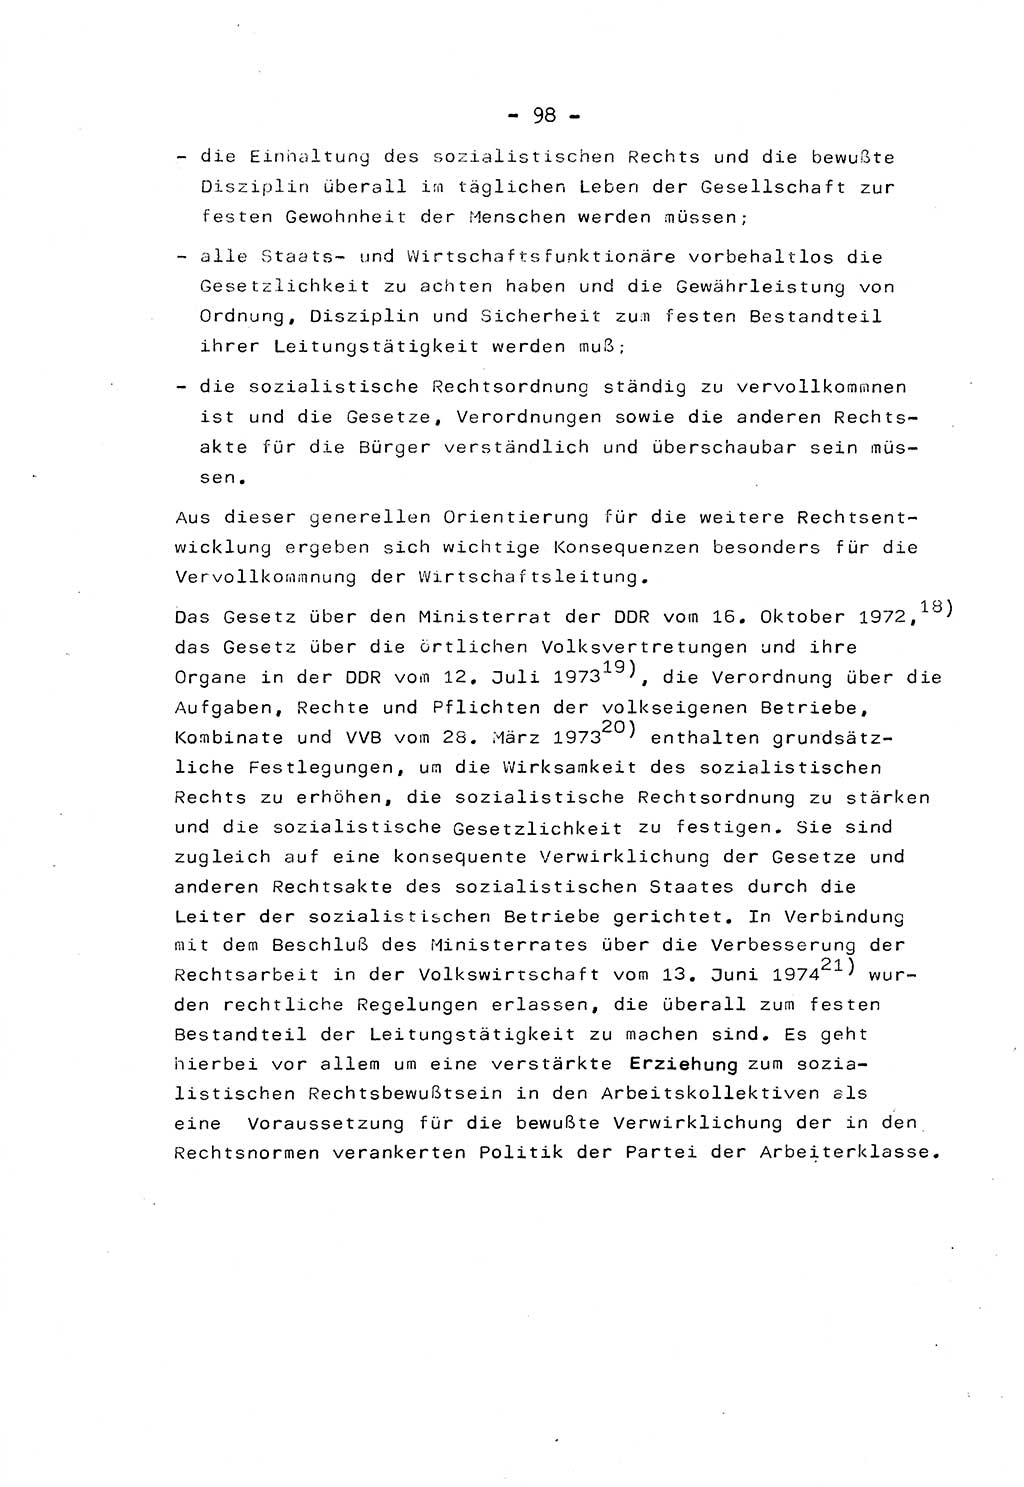 Marxistisch-leninistische Staats- und Rechtstheorie [Deutsche Demokratische Republik (DDR)] 1975, Seite 98 (ML St.-R.-Th. DDR 1975, S. 98)